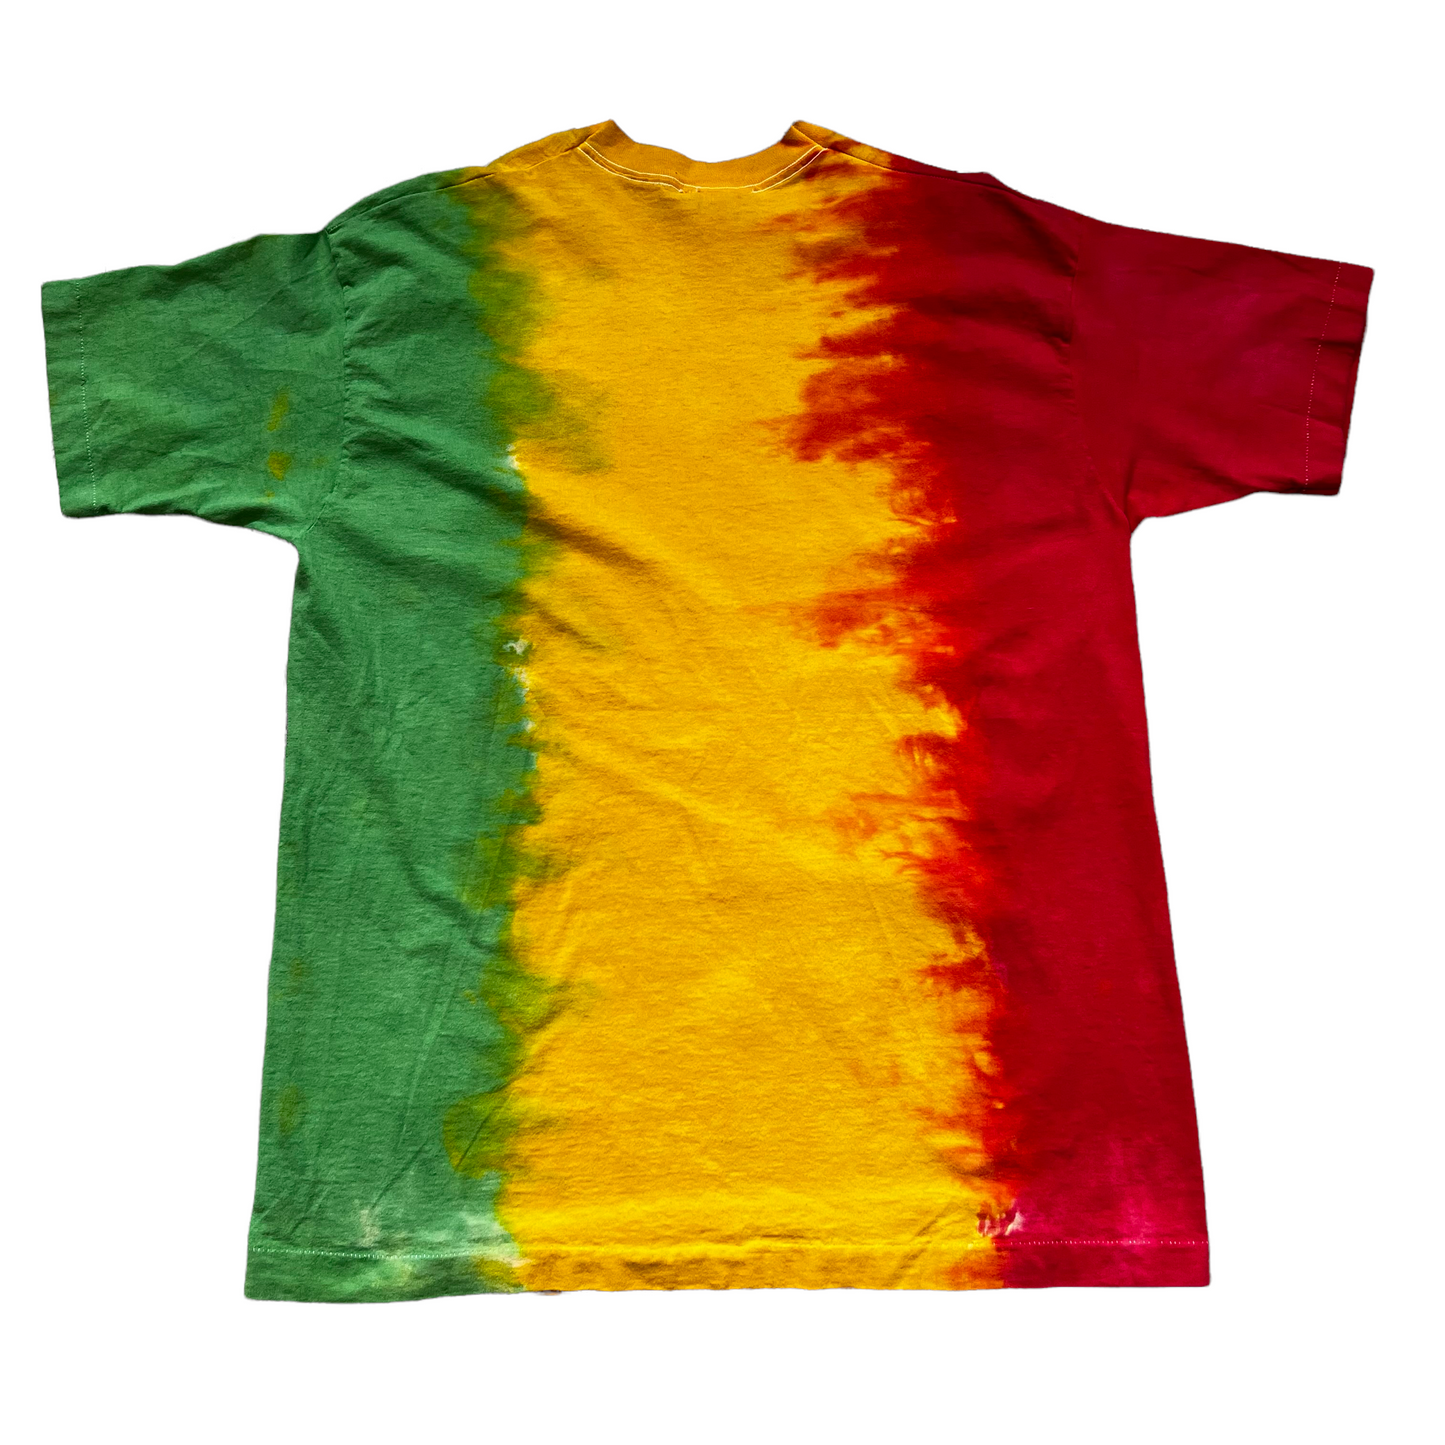 1993 Bob Marley tie dye t shirt XL